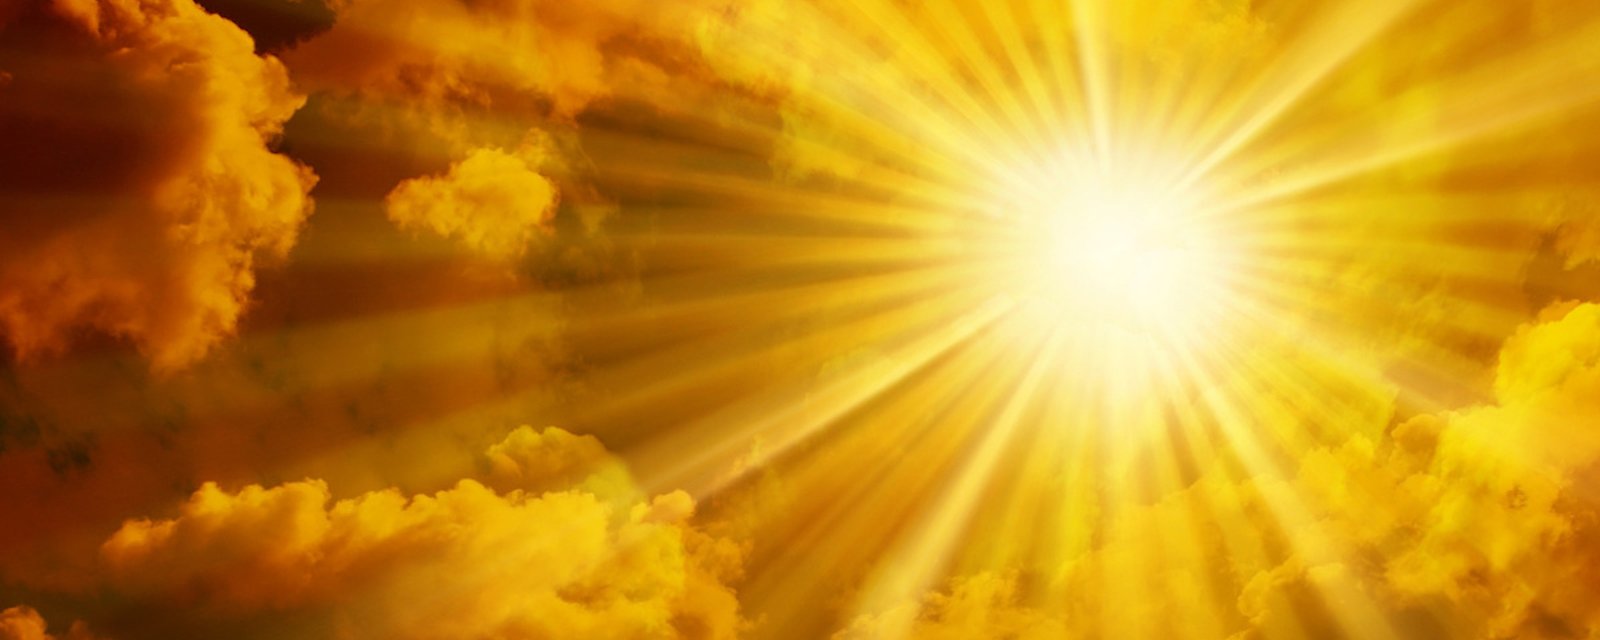 20 mars: le Soleil fait son entrée dans le signe du Bélier!